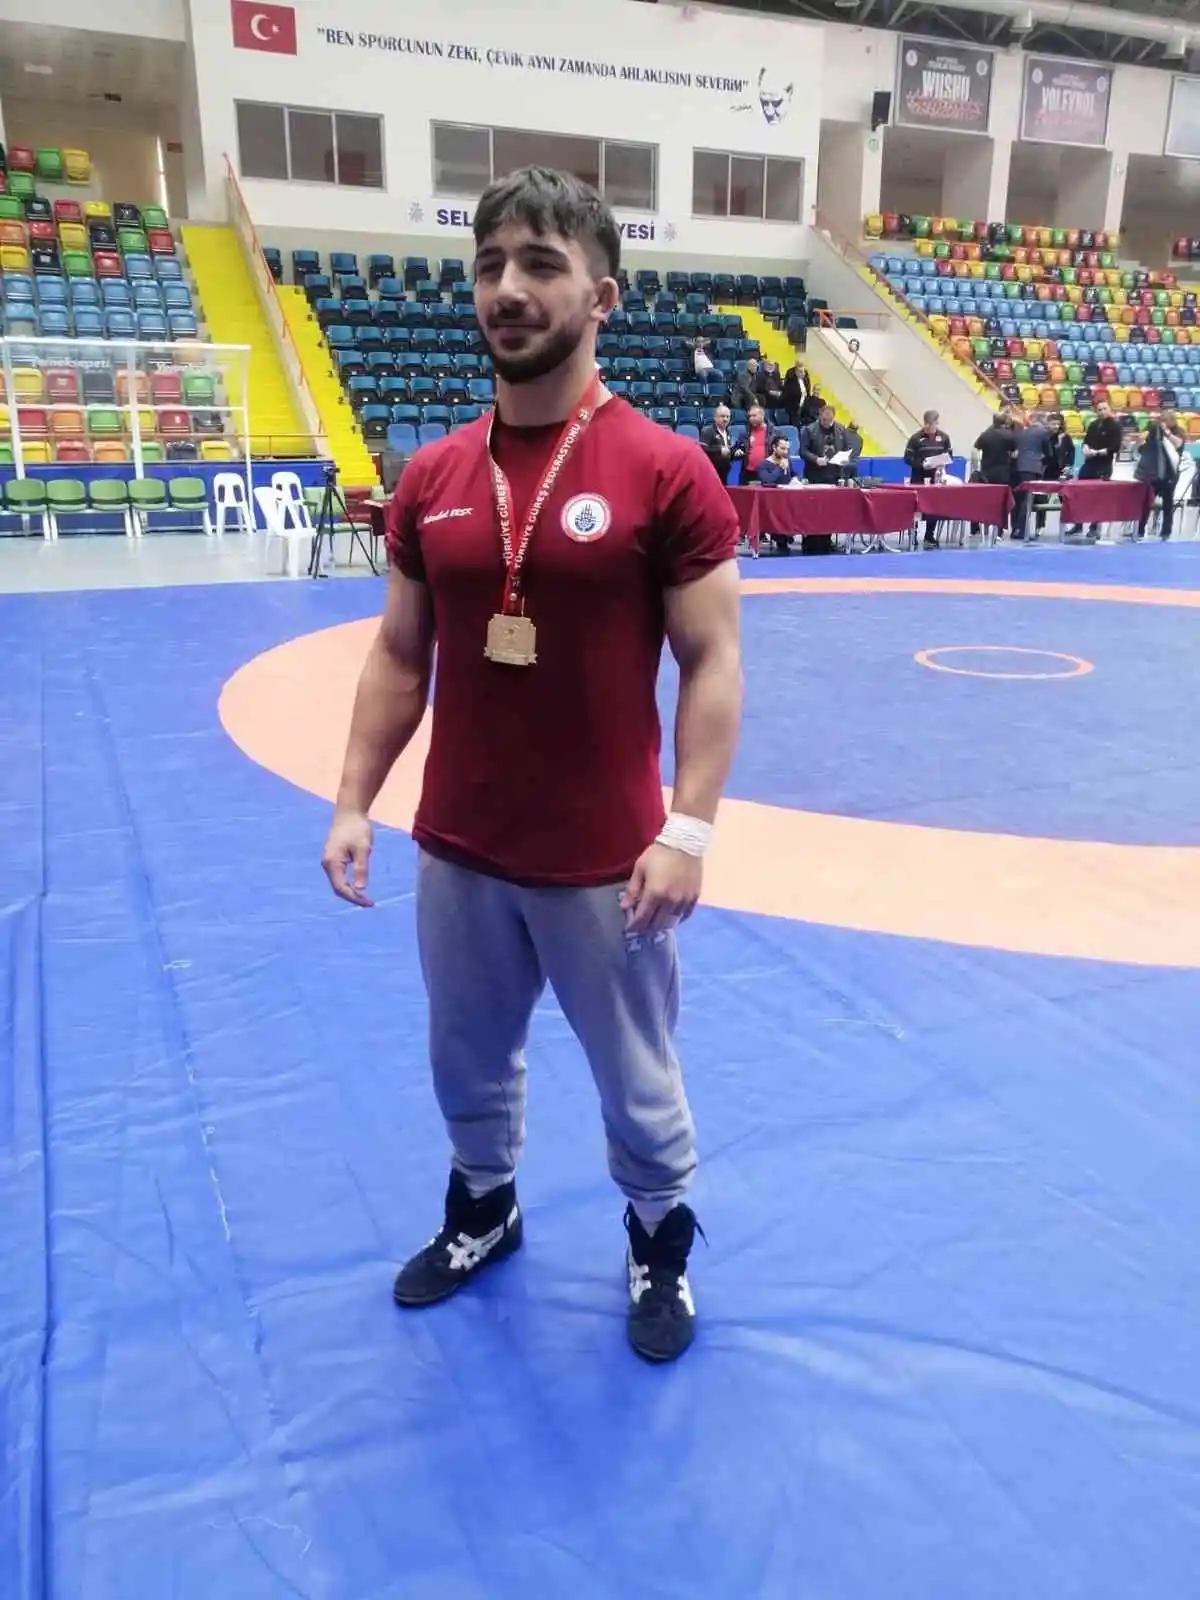 BARÜ’lü Milli Sporcu Emre Kural, Türkiye şampiyonu oldu
